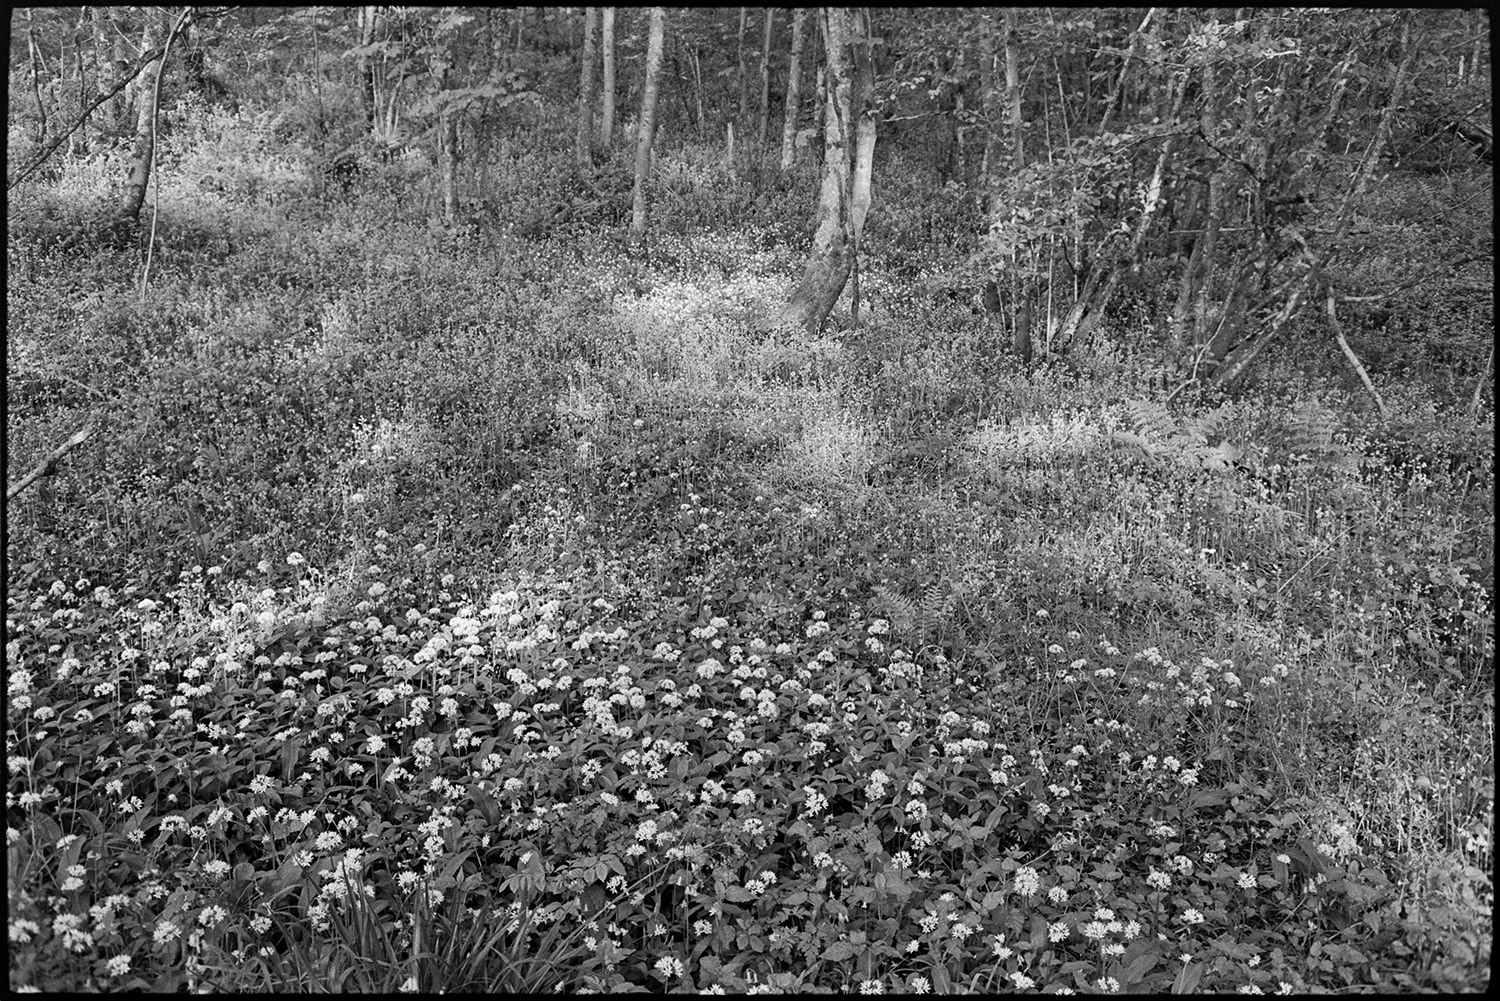 Flowers in wood. Garlic.
[Wild garlic flowers in the woods below Woolridge, Dolton.]